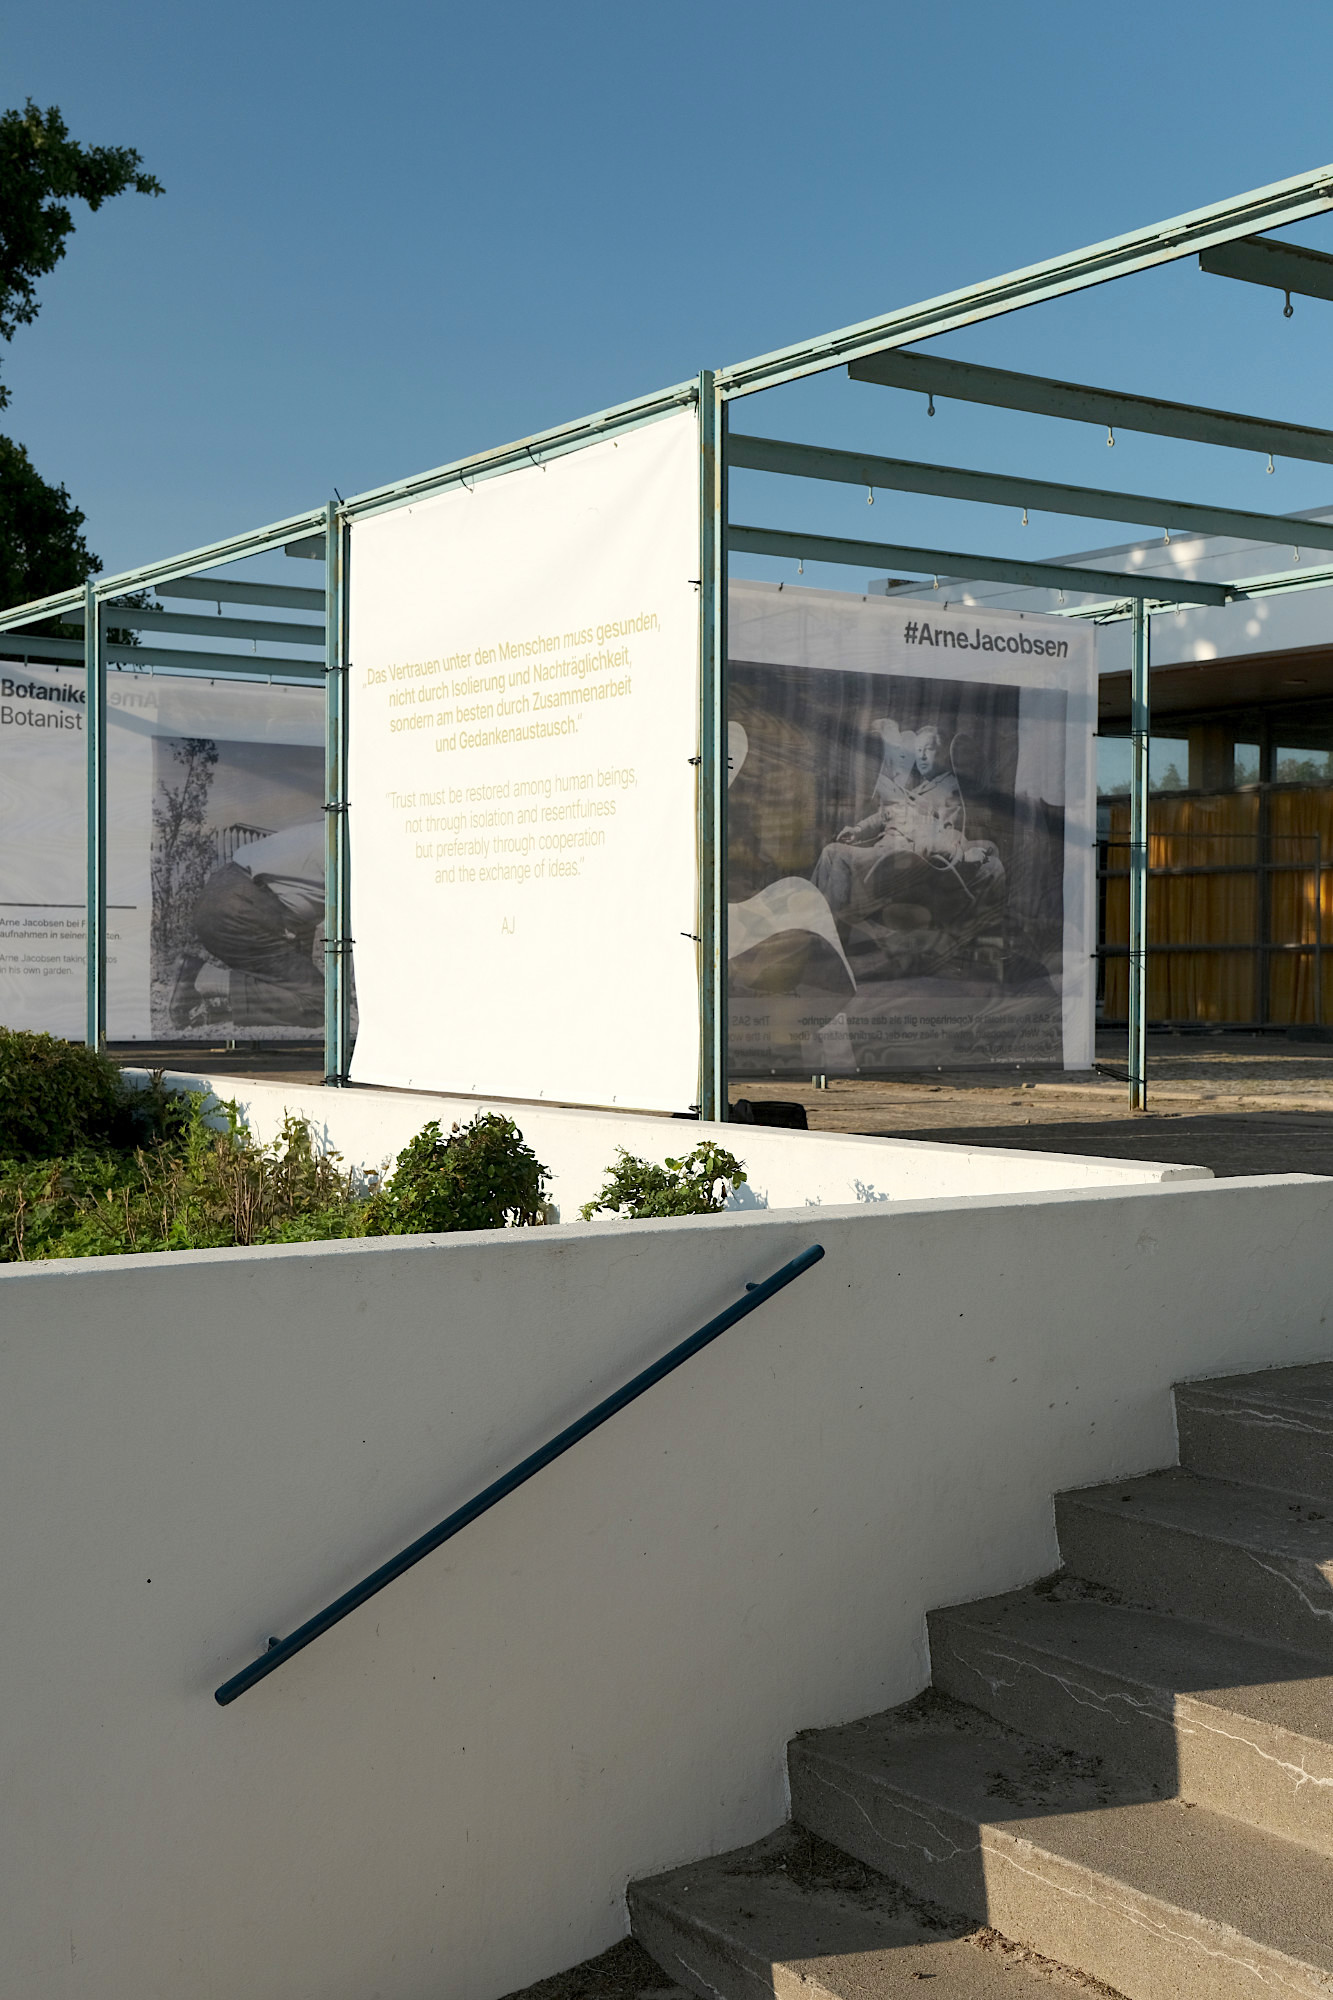 Freiluftausstellung auf Fehmarn: Open-Air-Galerie Arne Jacobsen